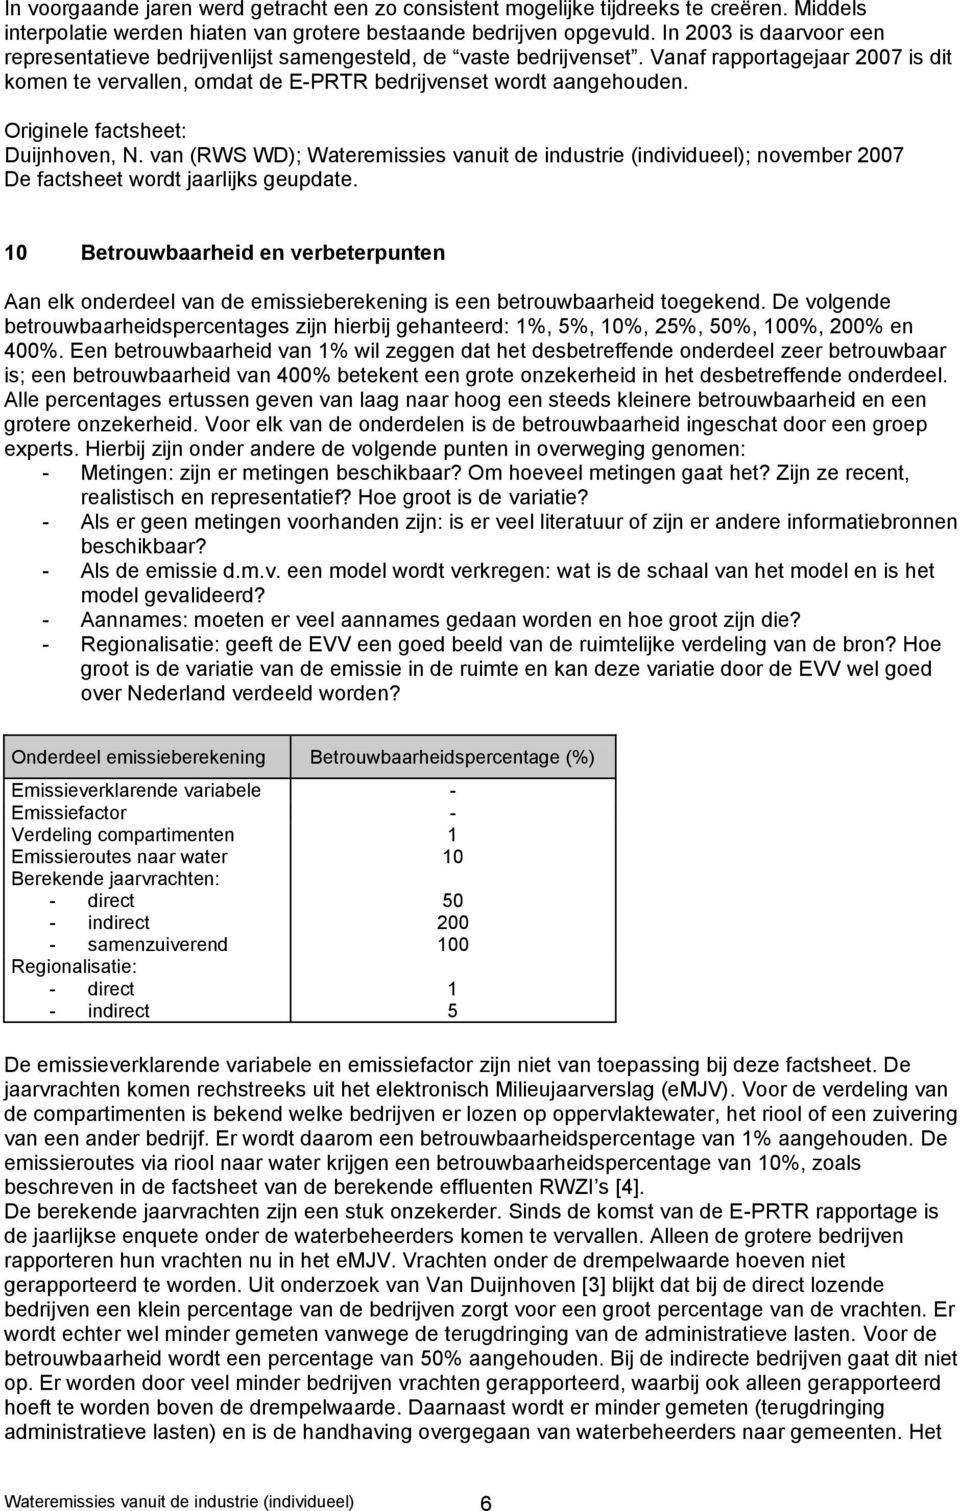 Originele factsheet: Duijnhoven, N. van (RWS WD); Wateremissies vanuit de industrie (individueel); november 2007 De factsheet wordt jaarlijks geupdate.